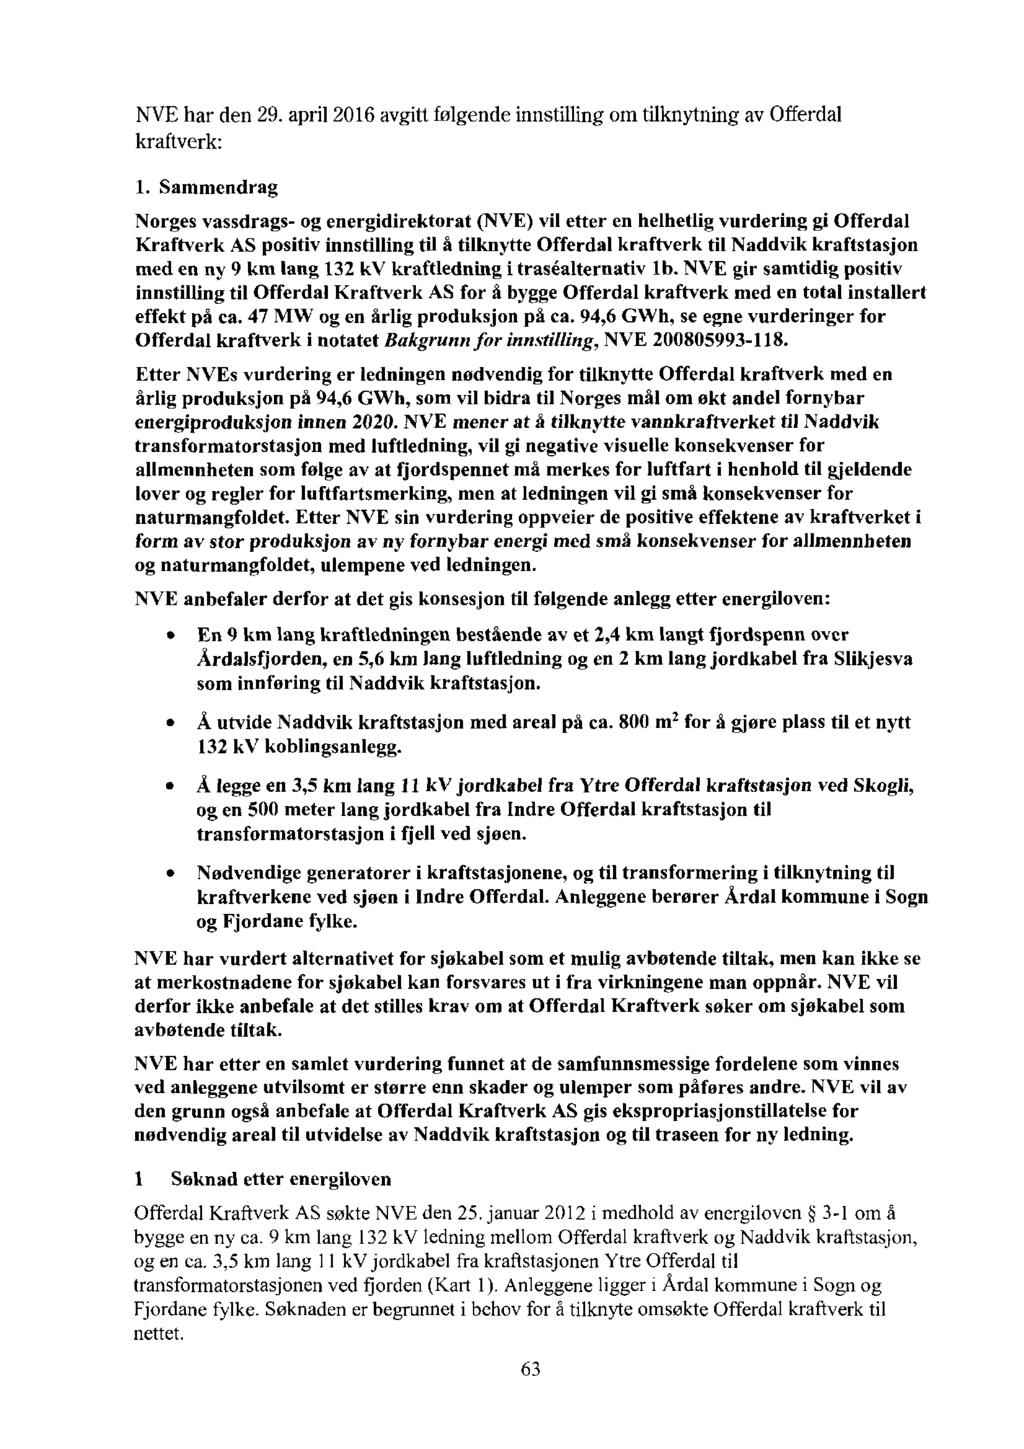 NVEhar den 29. april 2016 avgitt folgende innstilling om tilknytning av Offerdal kraftverk: 1.